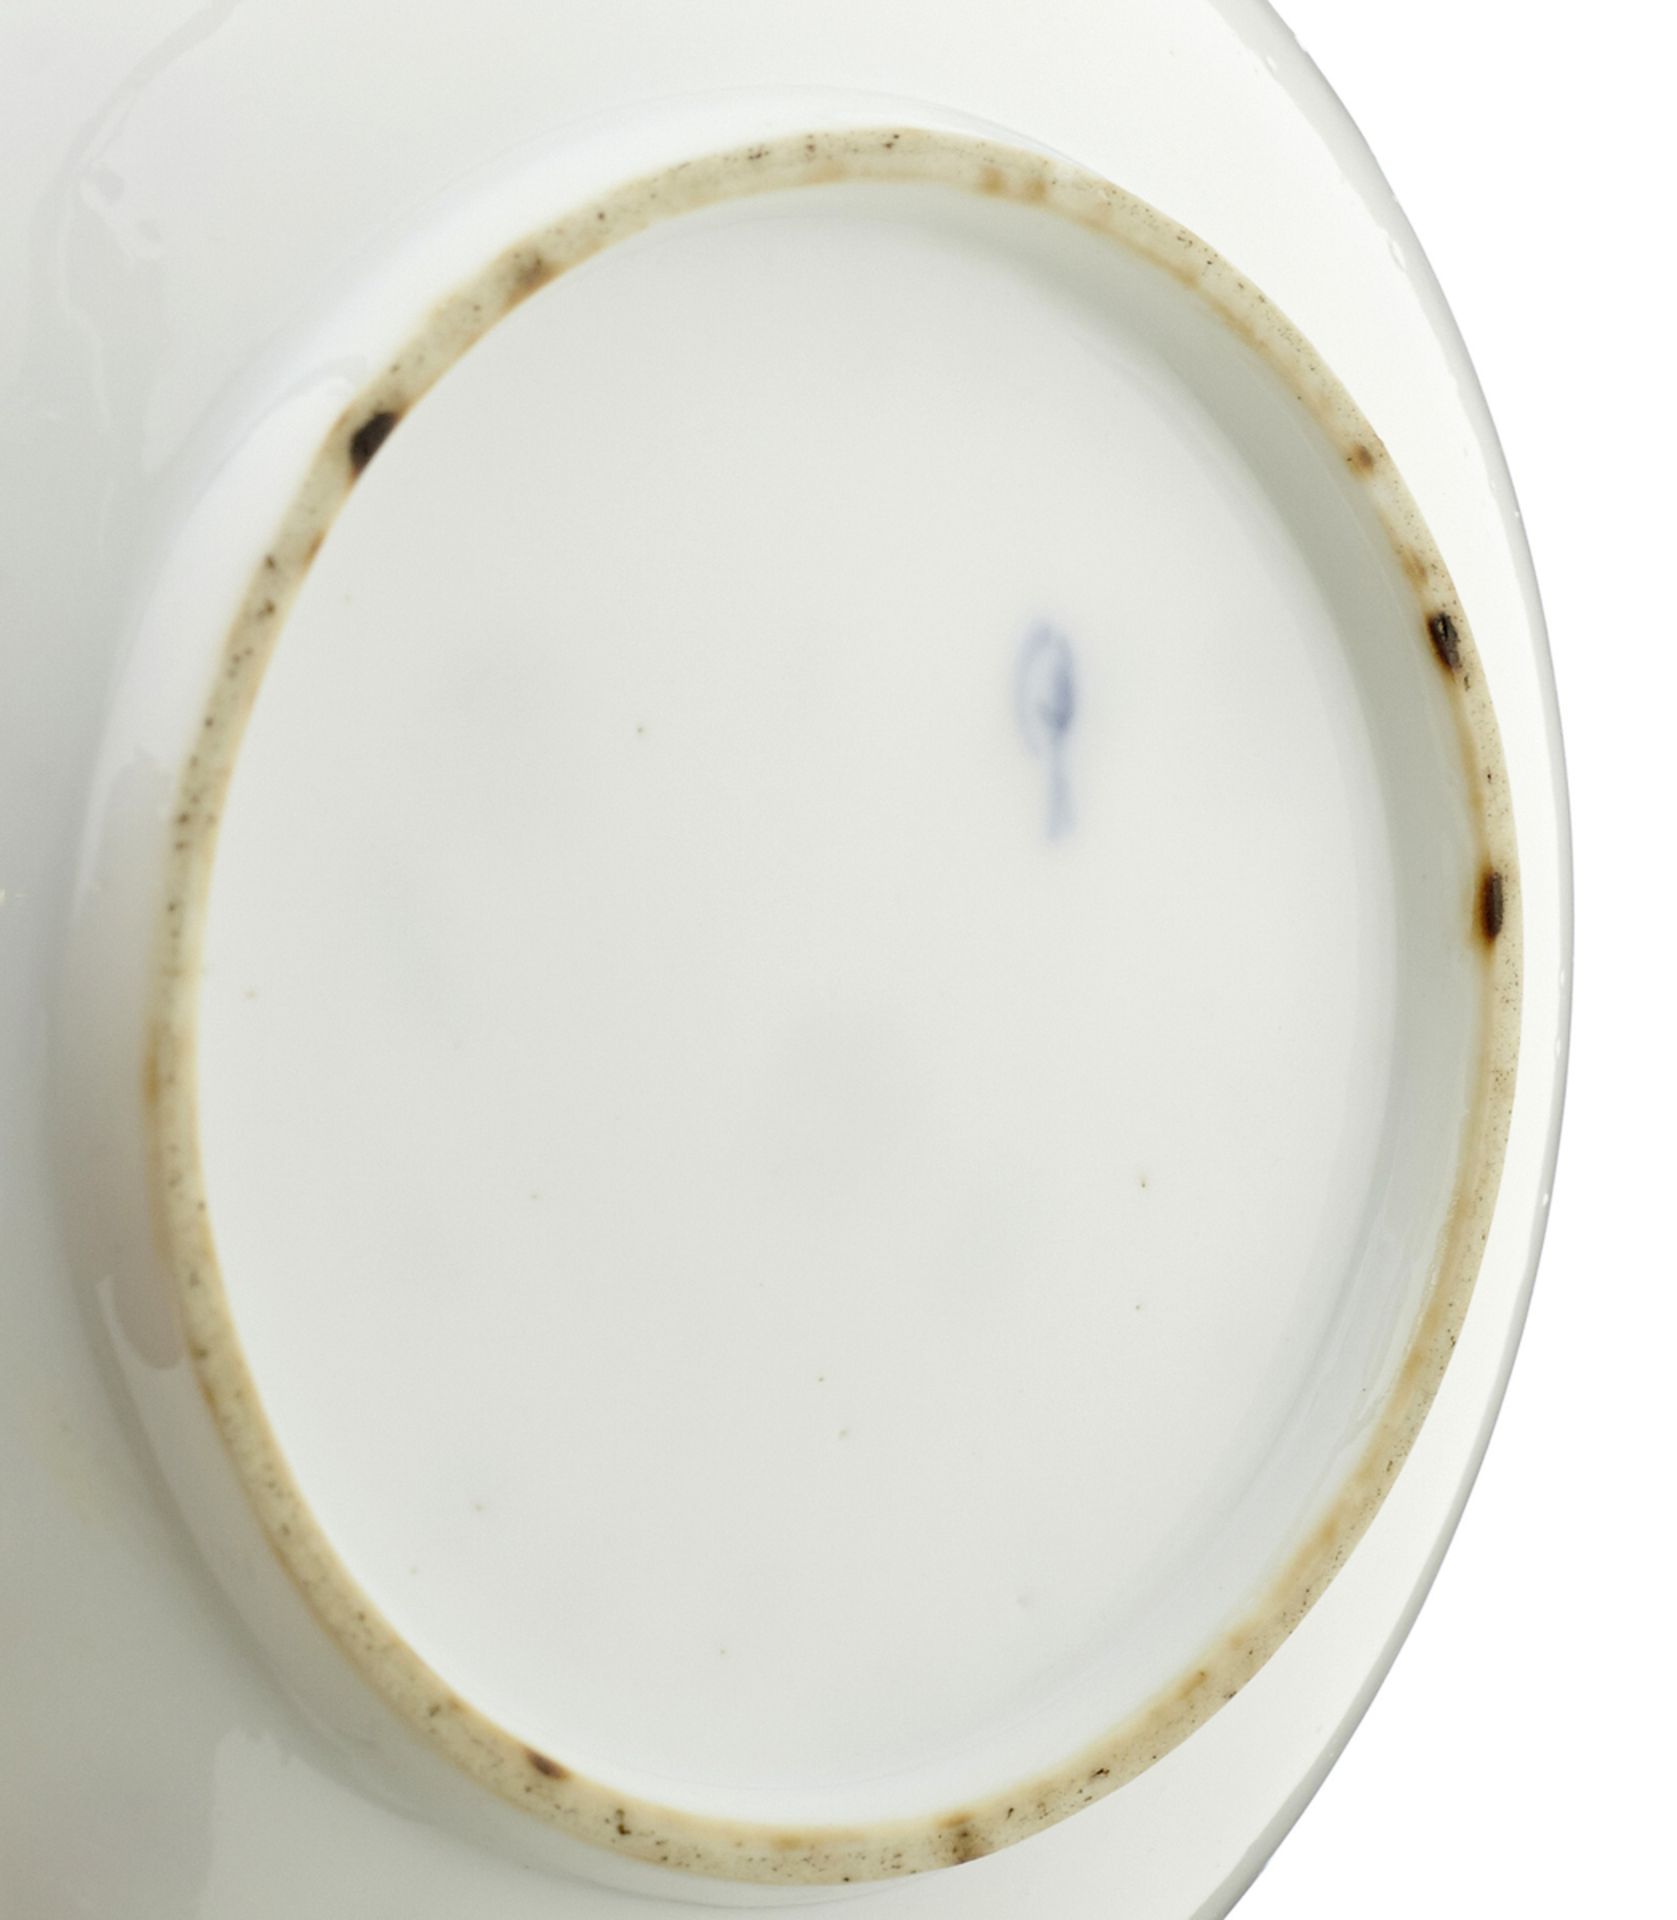 6 KoppchenWohl Nyon, Anfang 19. Jh. Glatte Porzellankoppchen mit Untertellern. Polychrome - Bild 6 aus 6